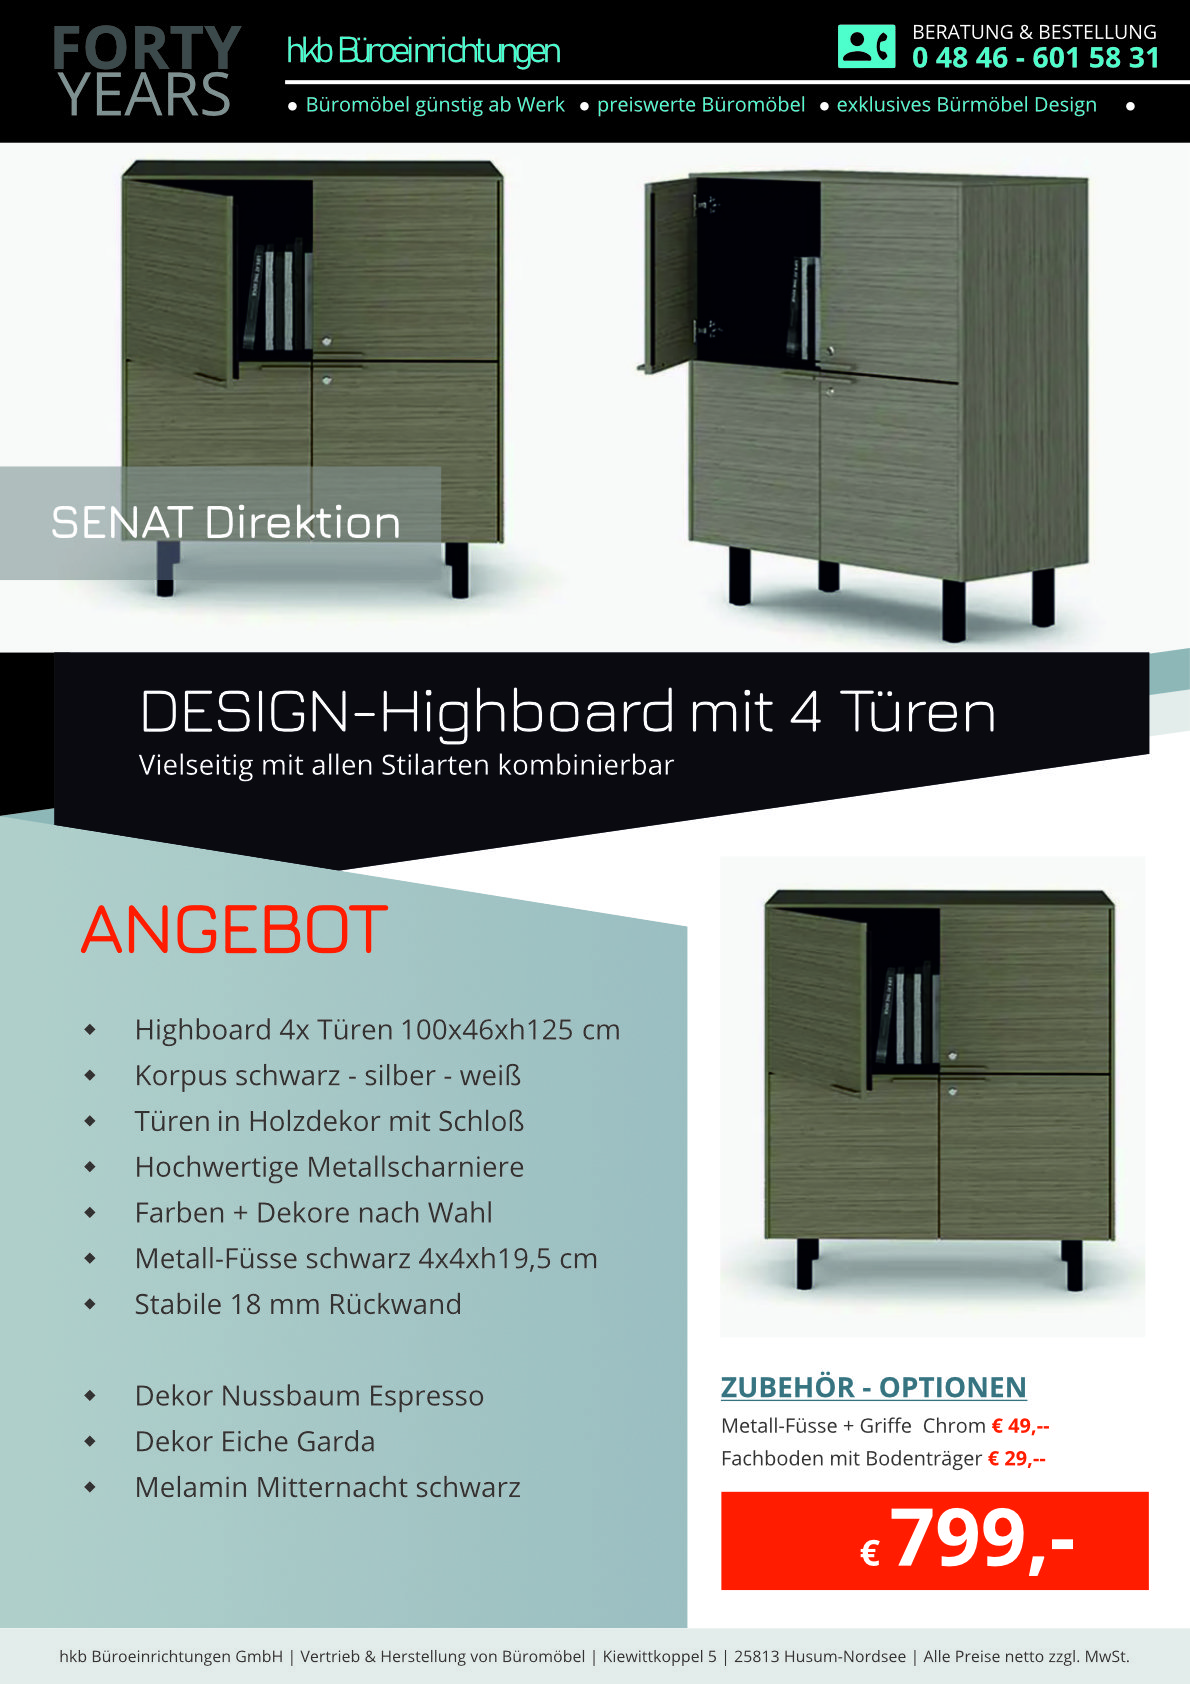 Angebot Highboard aus der Kollektion Büromöbel Senat von der Firma HKB Büroeinrichtungen GmbH Husum